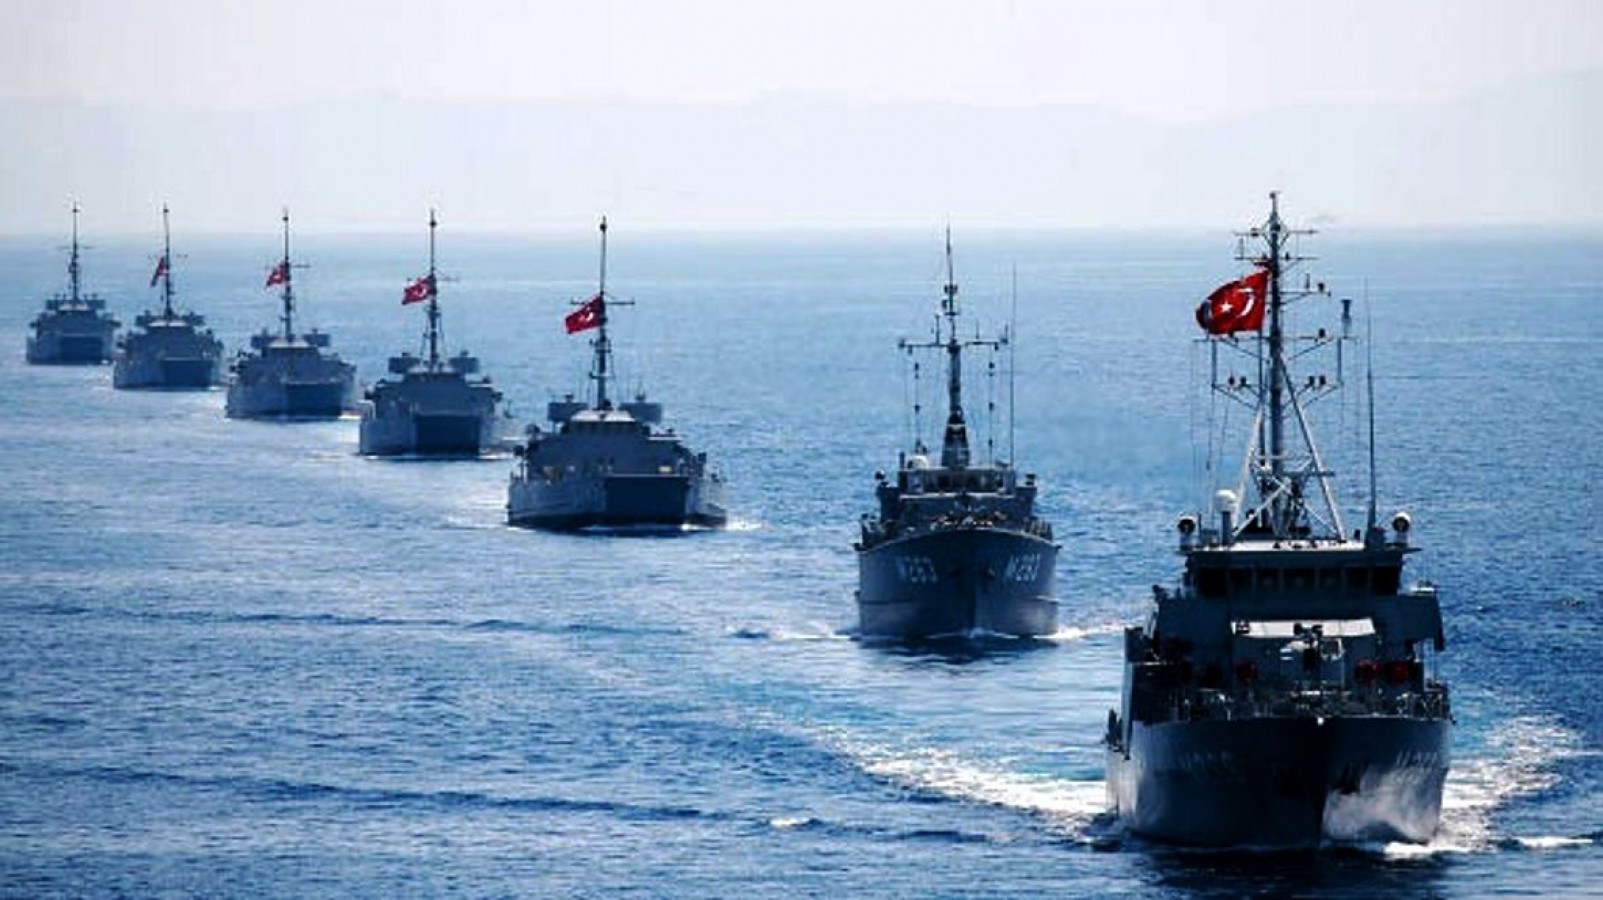 100 gemimiz İstanbul Boğazı'na iniyor